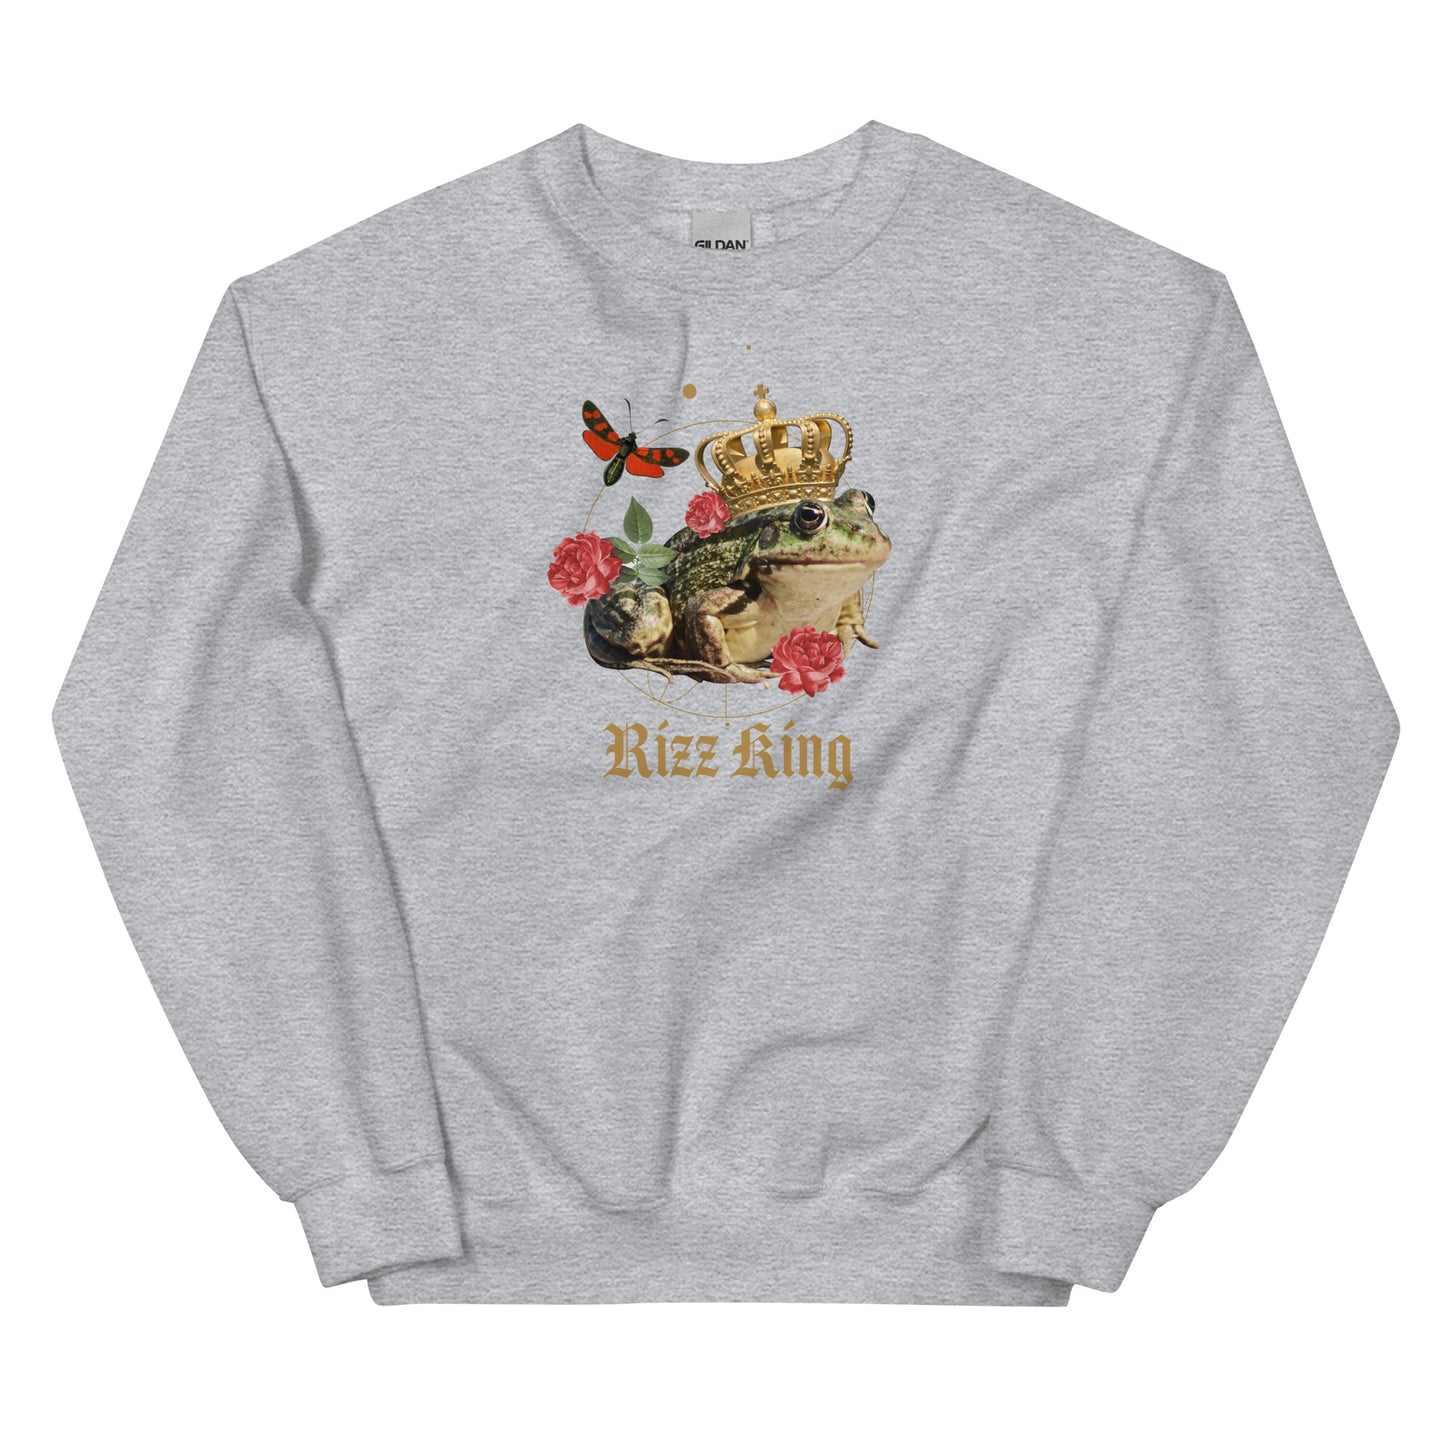 Rizz King (Frog) Unisex Sweatshirt